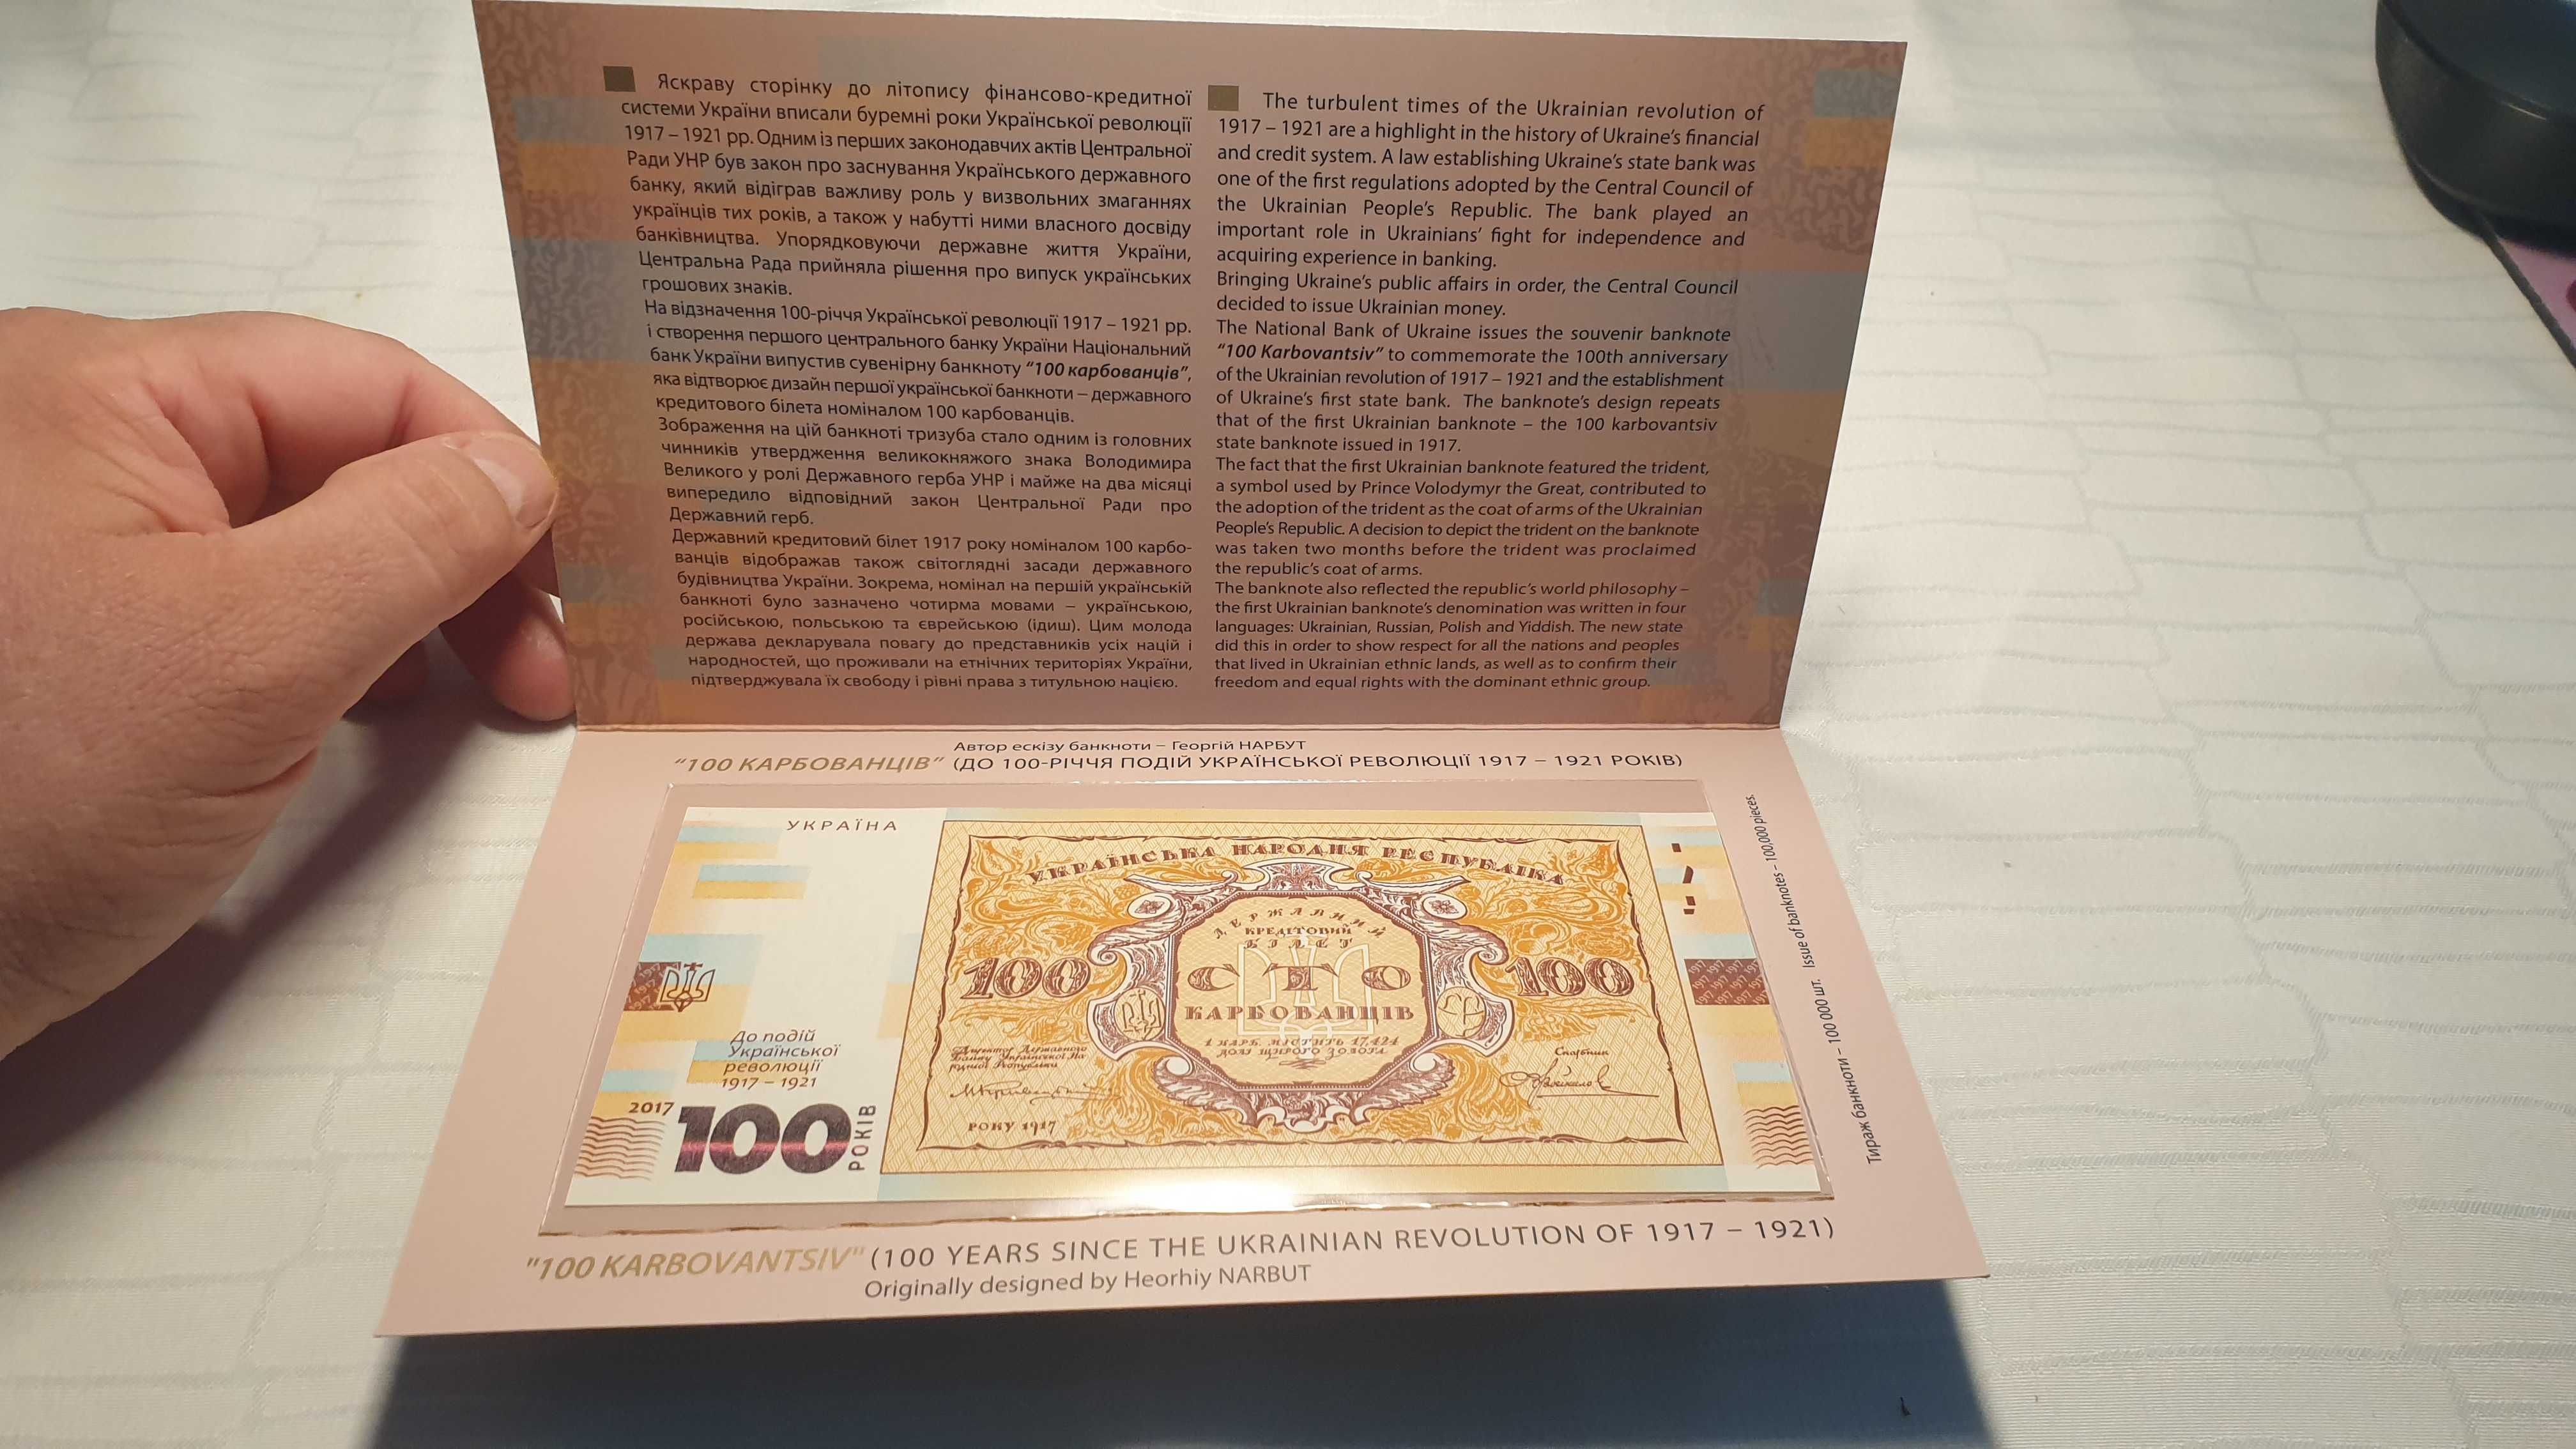 Bancnote 100 griven Ukraine 1917-1921 UNC GEM consecutive